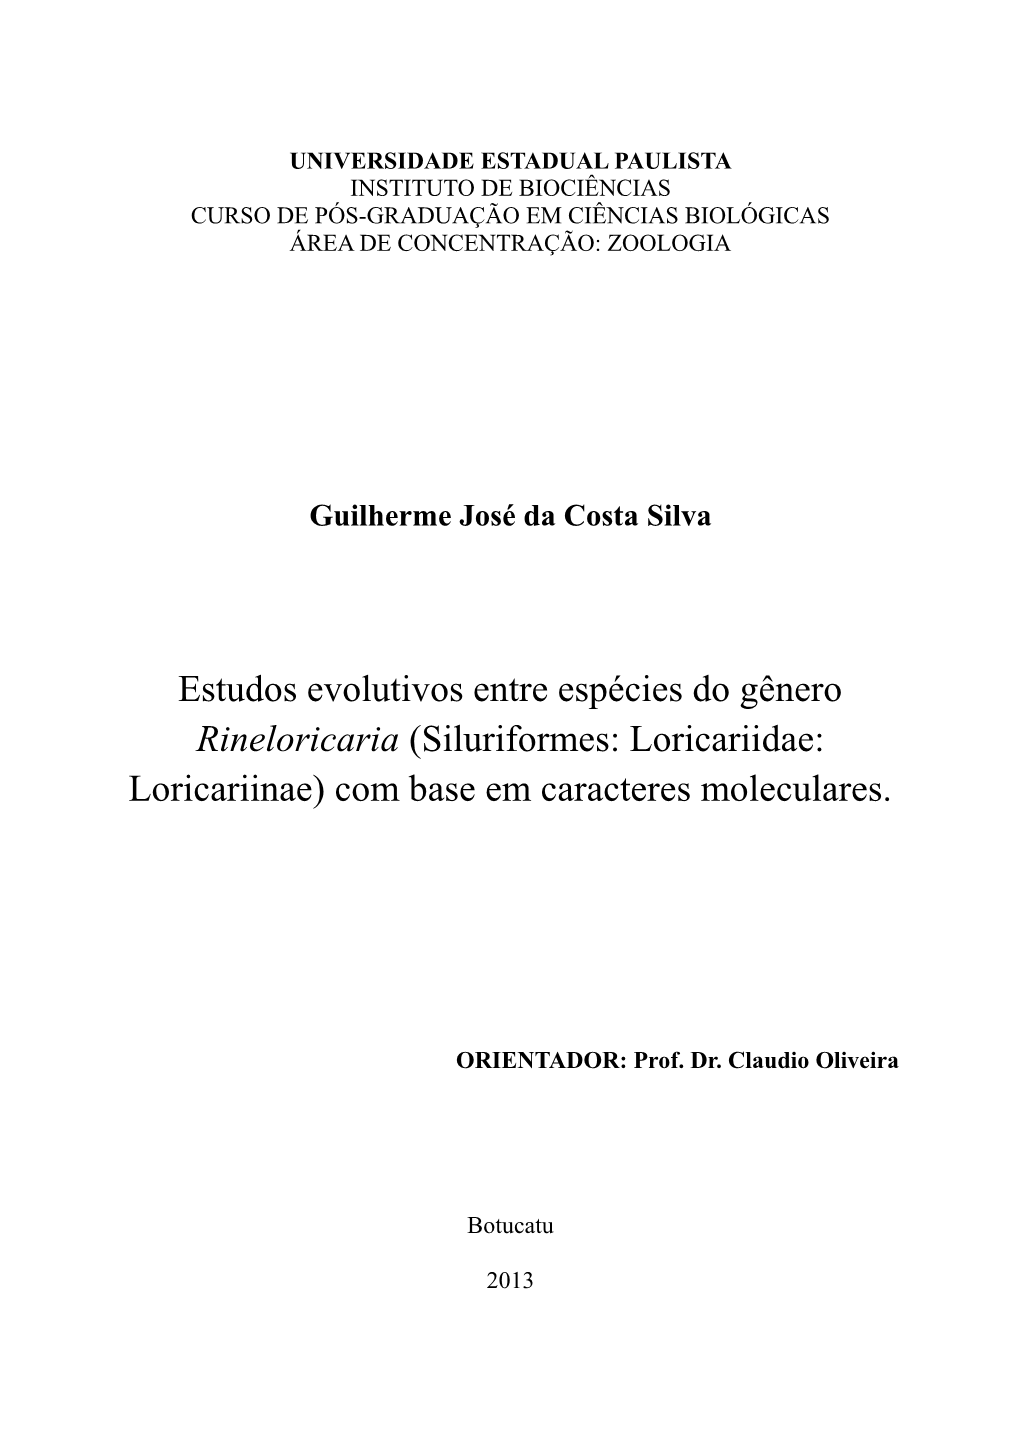 Estudos Evolutivos Entre Espécies Do Gênero Rineloricaria (Siluriformes: Loricariidae: Loricariinae) Com Base Em Caracteres Moleculares